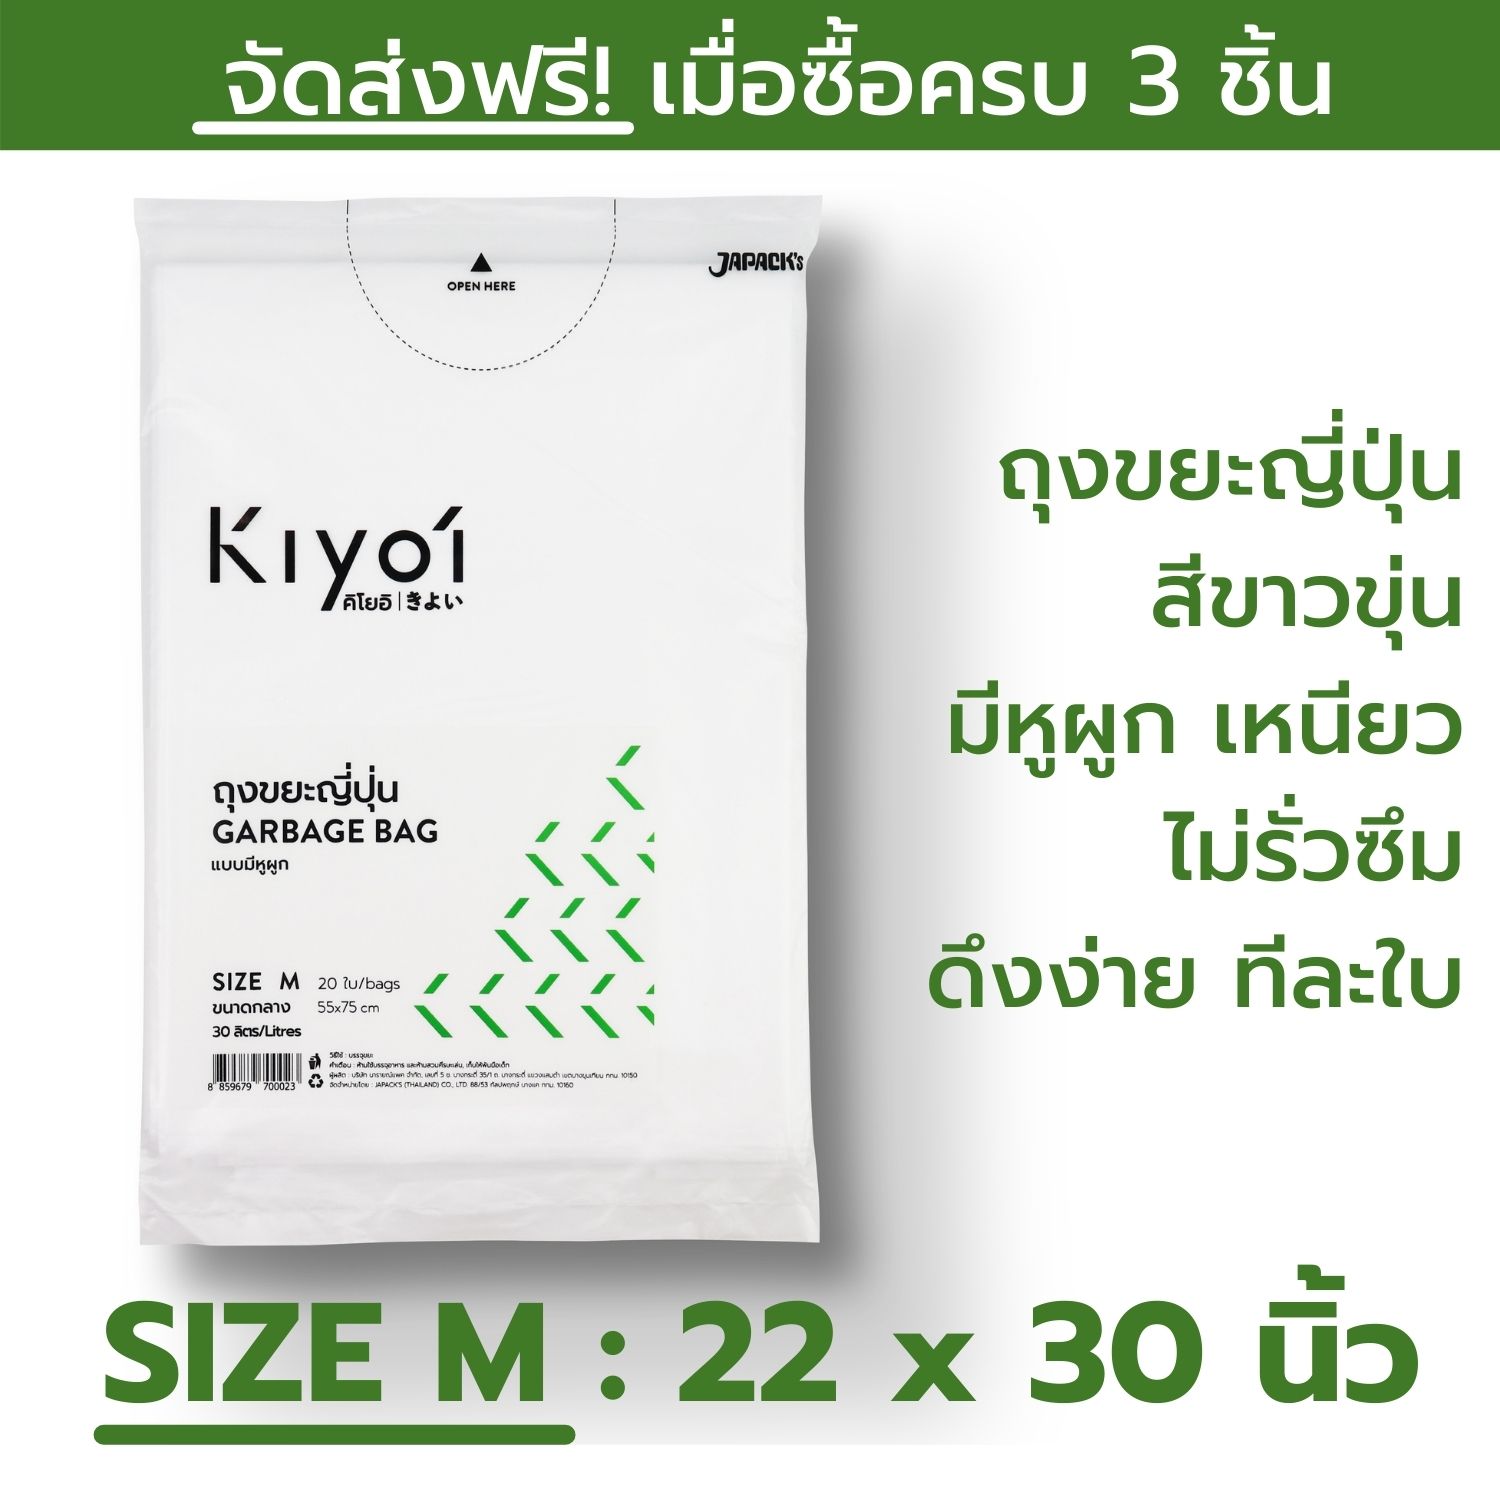 KIYOI (คิโยอิ)- ถุงขยะญี่ปุ่นมีหูผูก SIZE M ขนาดกลาง (55x75ซม. หรือ 22x30นิ้ว) 20 ใบ/แพ๊ค